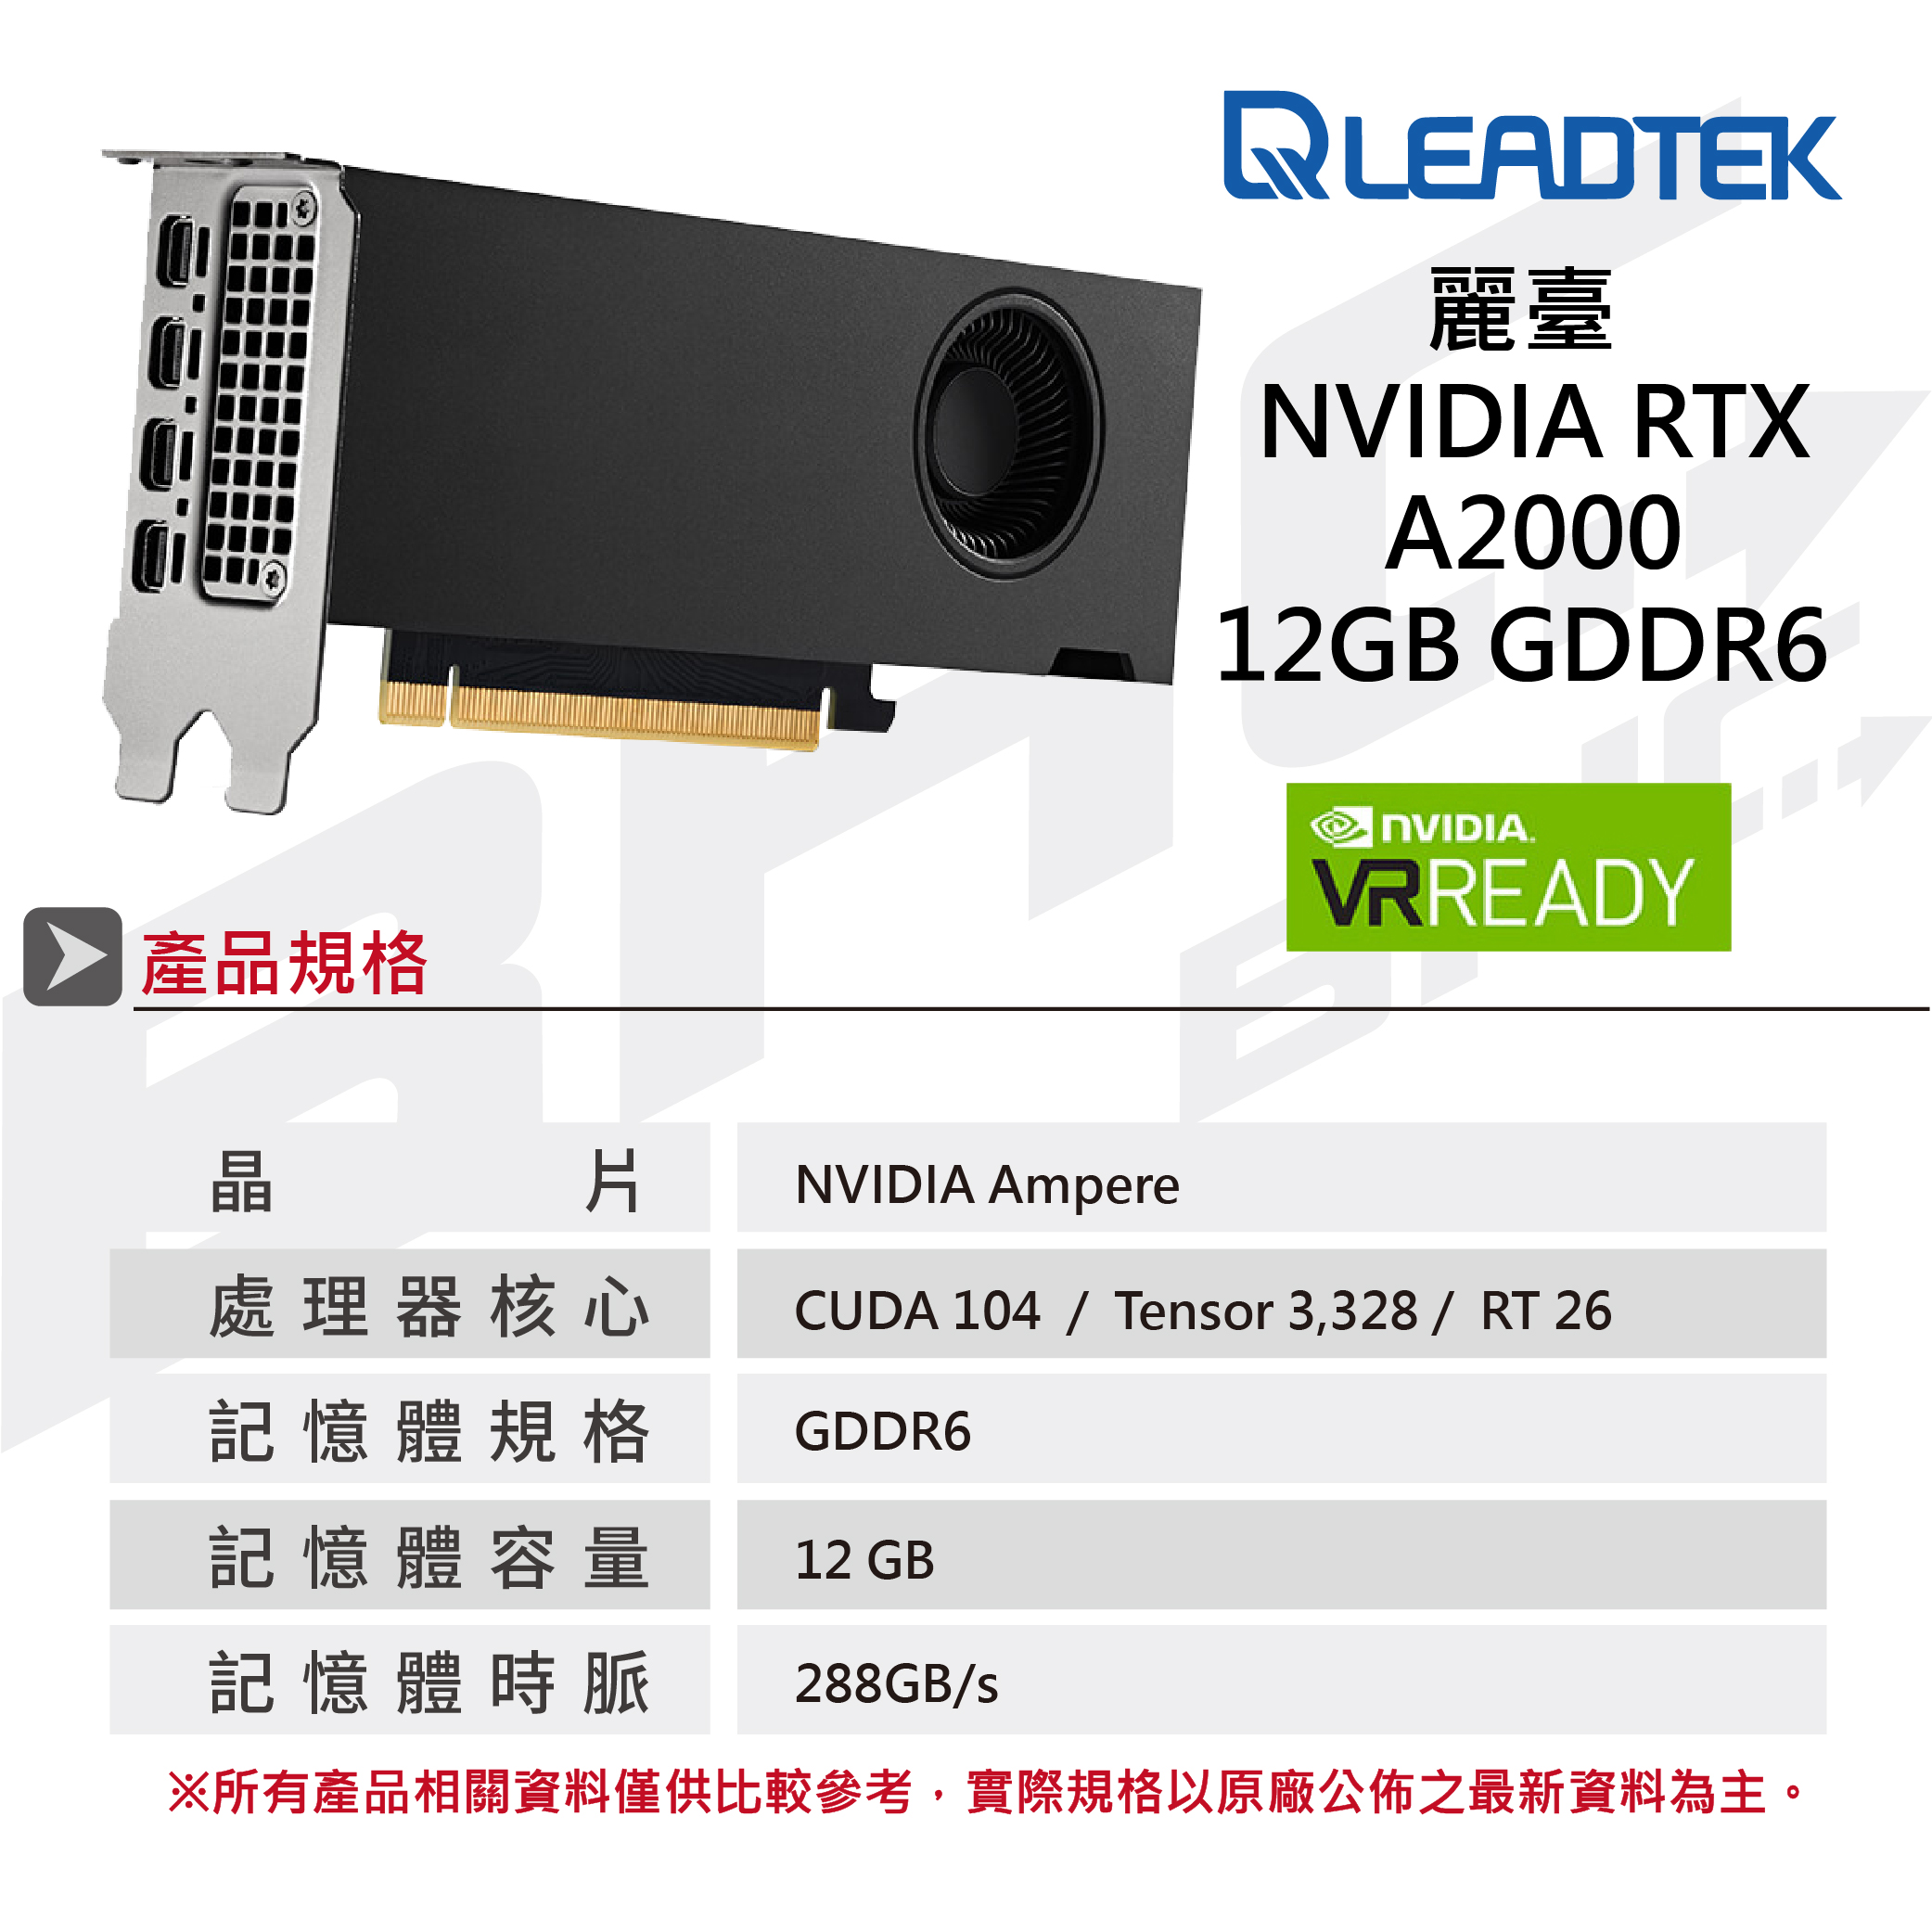 須搭機)麗臺NVIDIA RTX A2000 12GB DDR6 192bit工作站繪圖卡